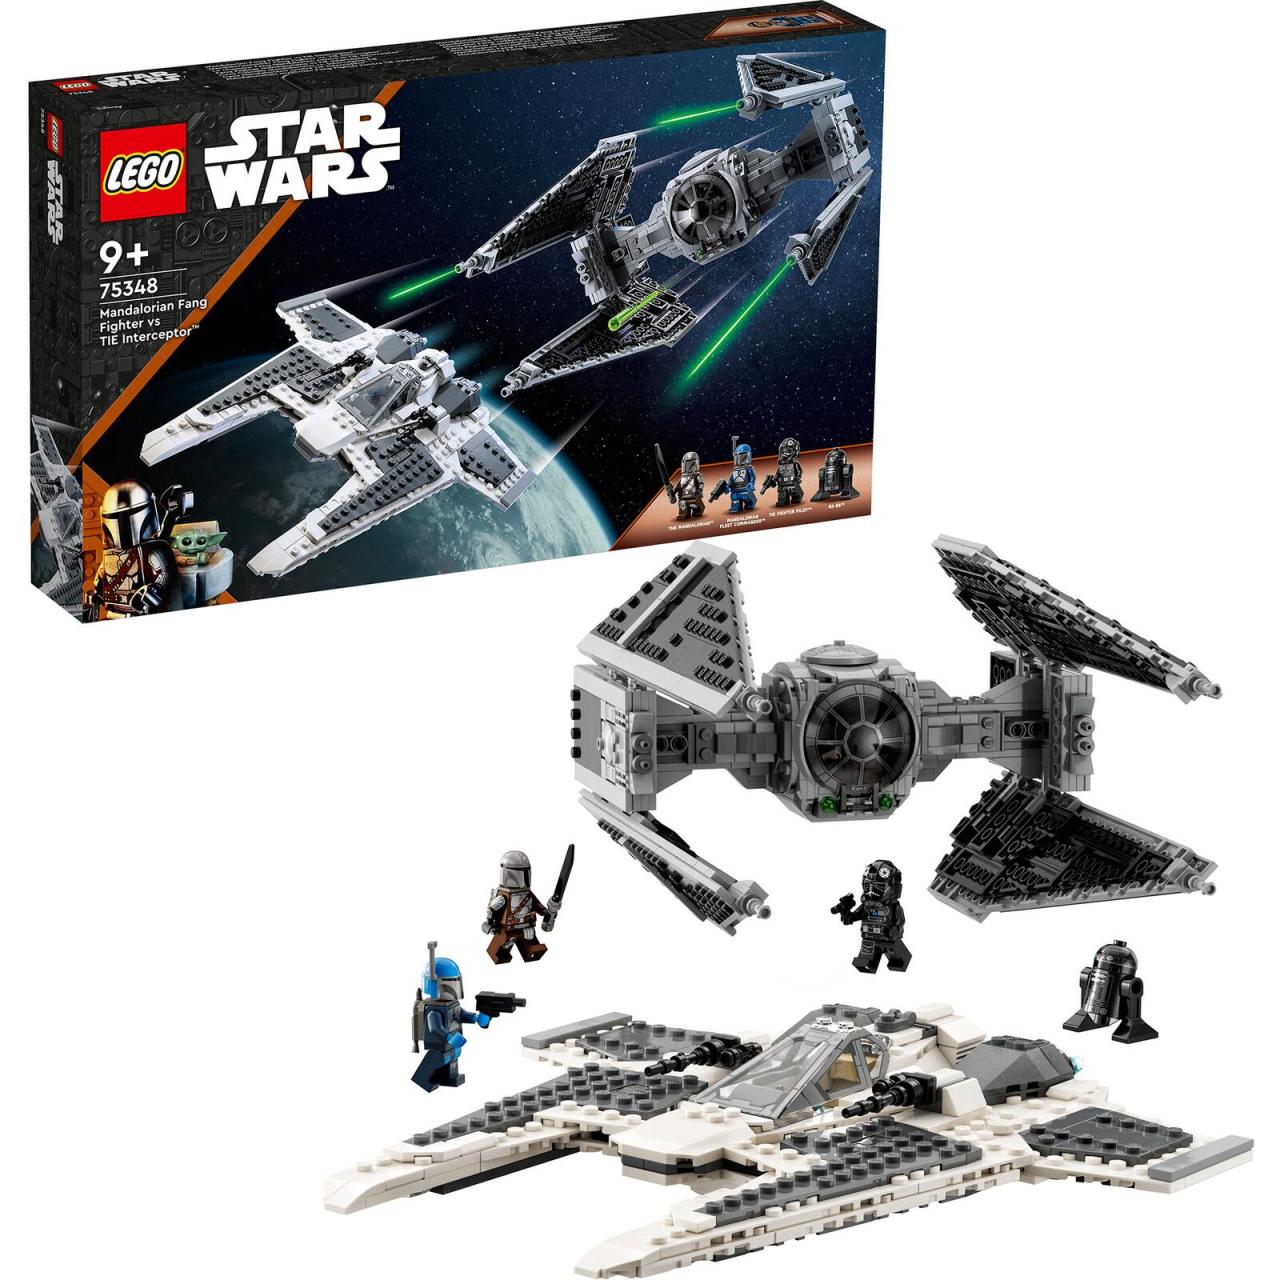 LEGO® Star Wars Mandalorischer Fang Fighter vs. TIE Interceptor™ 75348 von Lego